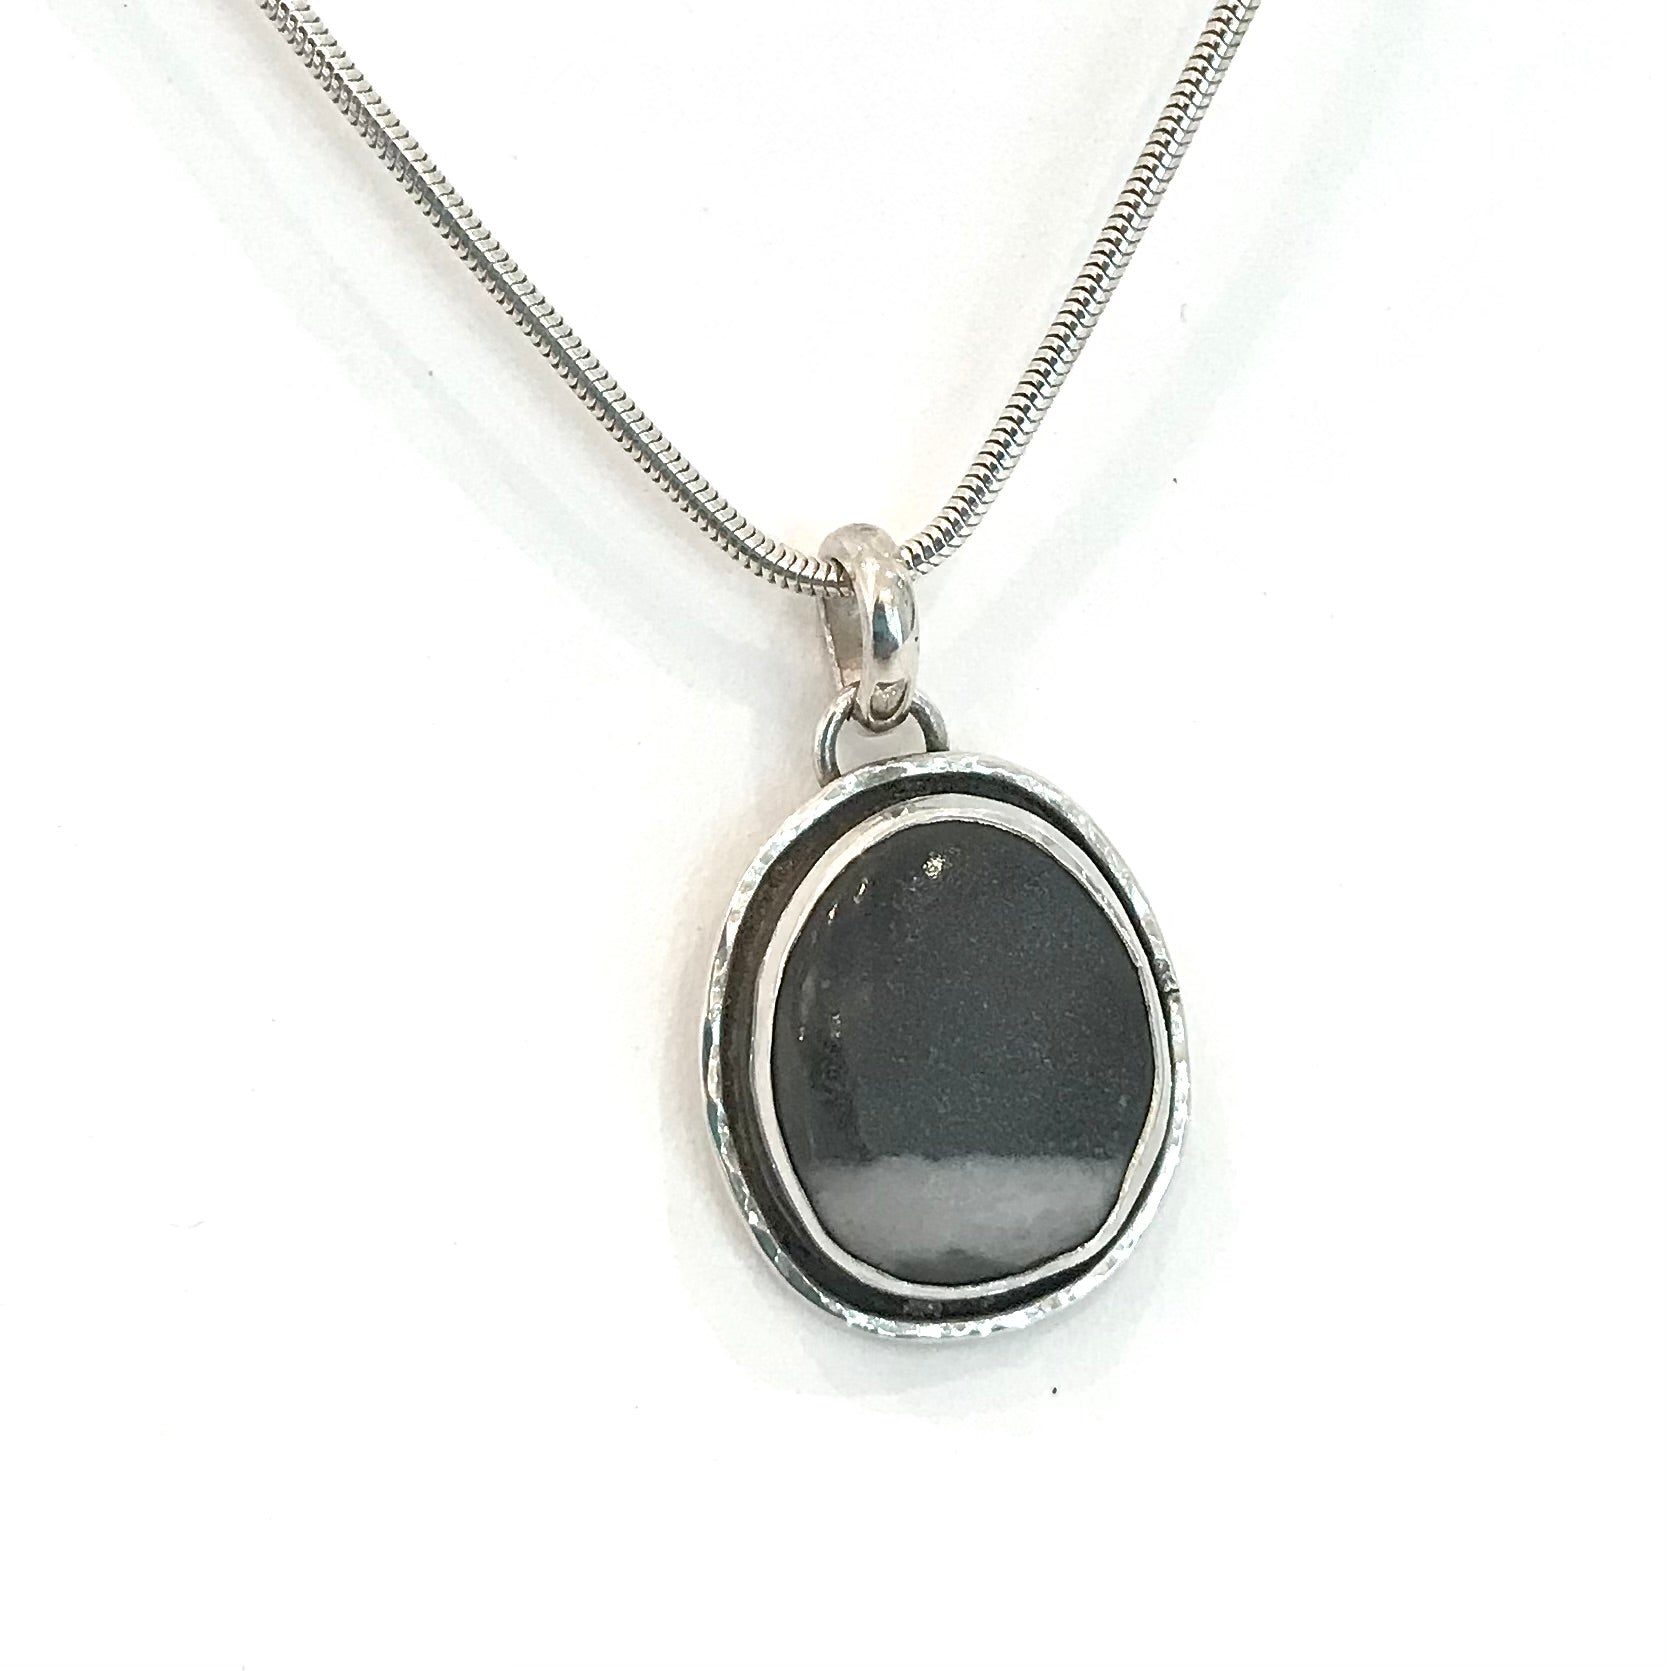 Black & White Pebble pendant